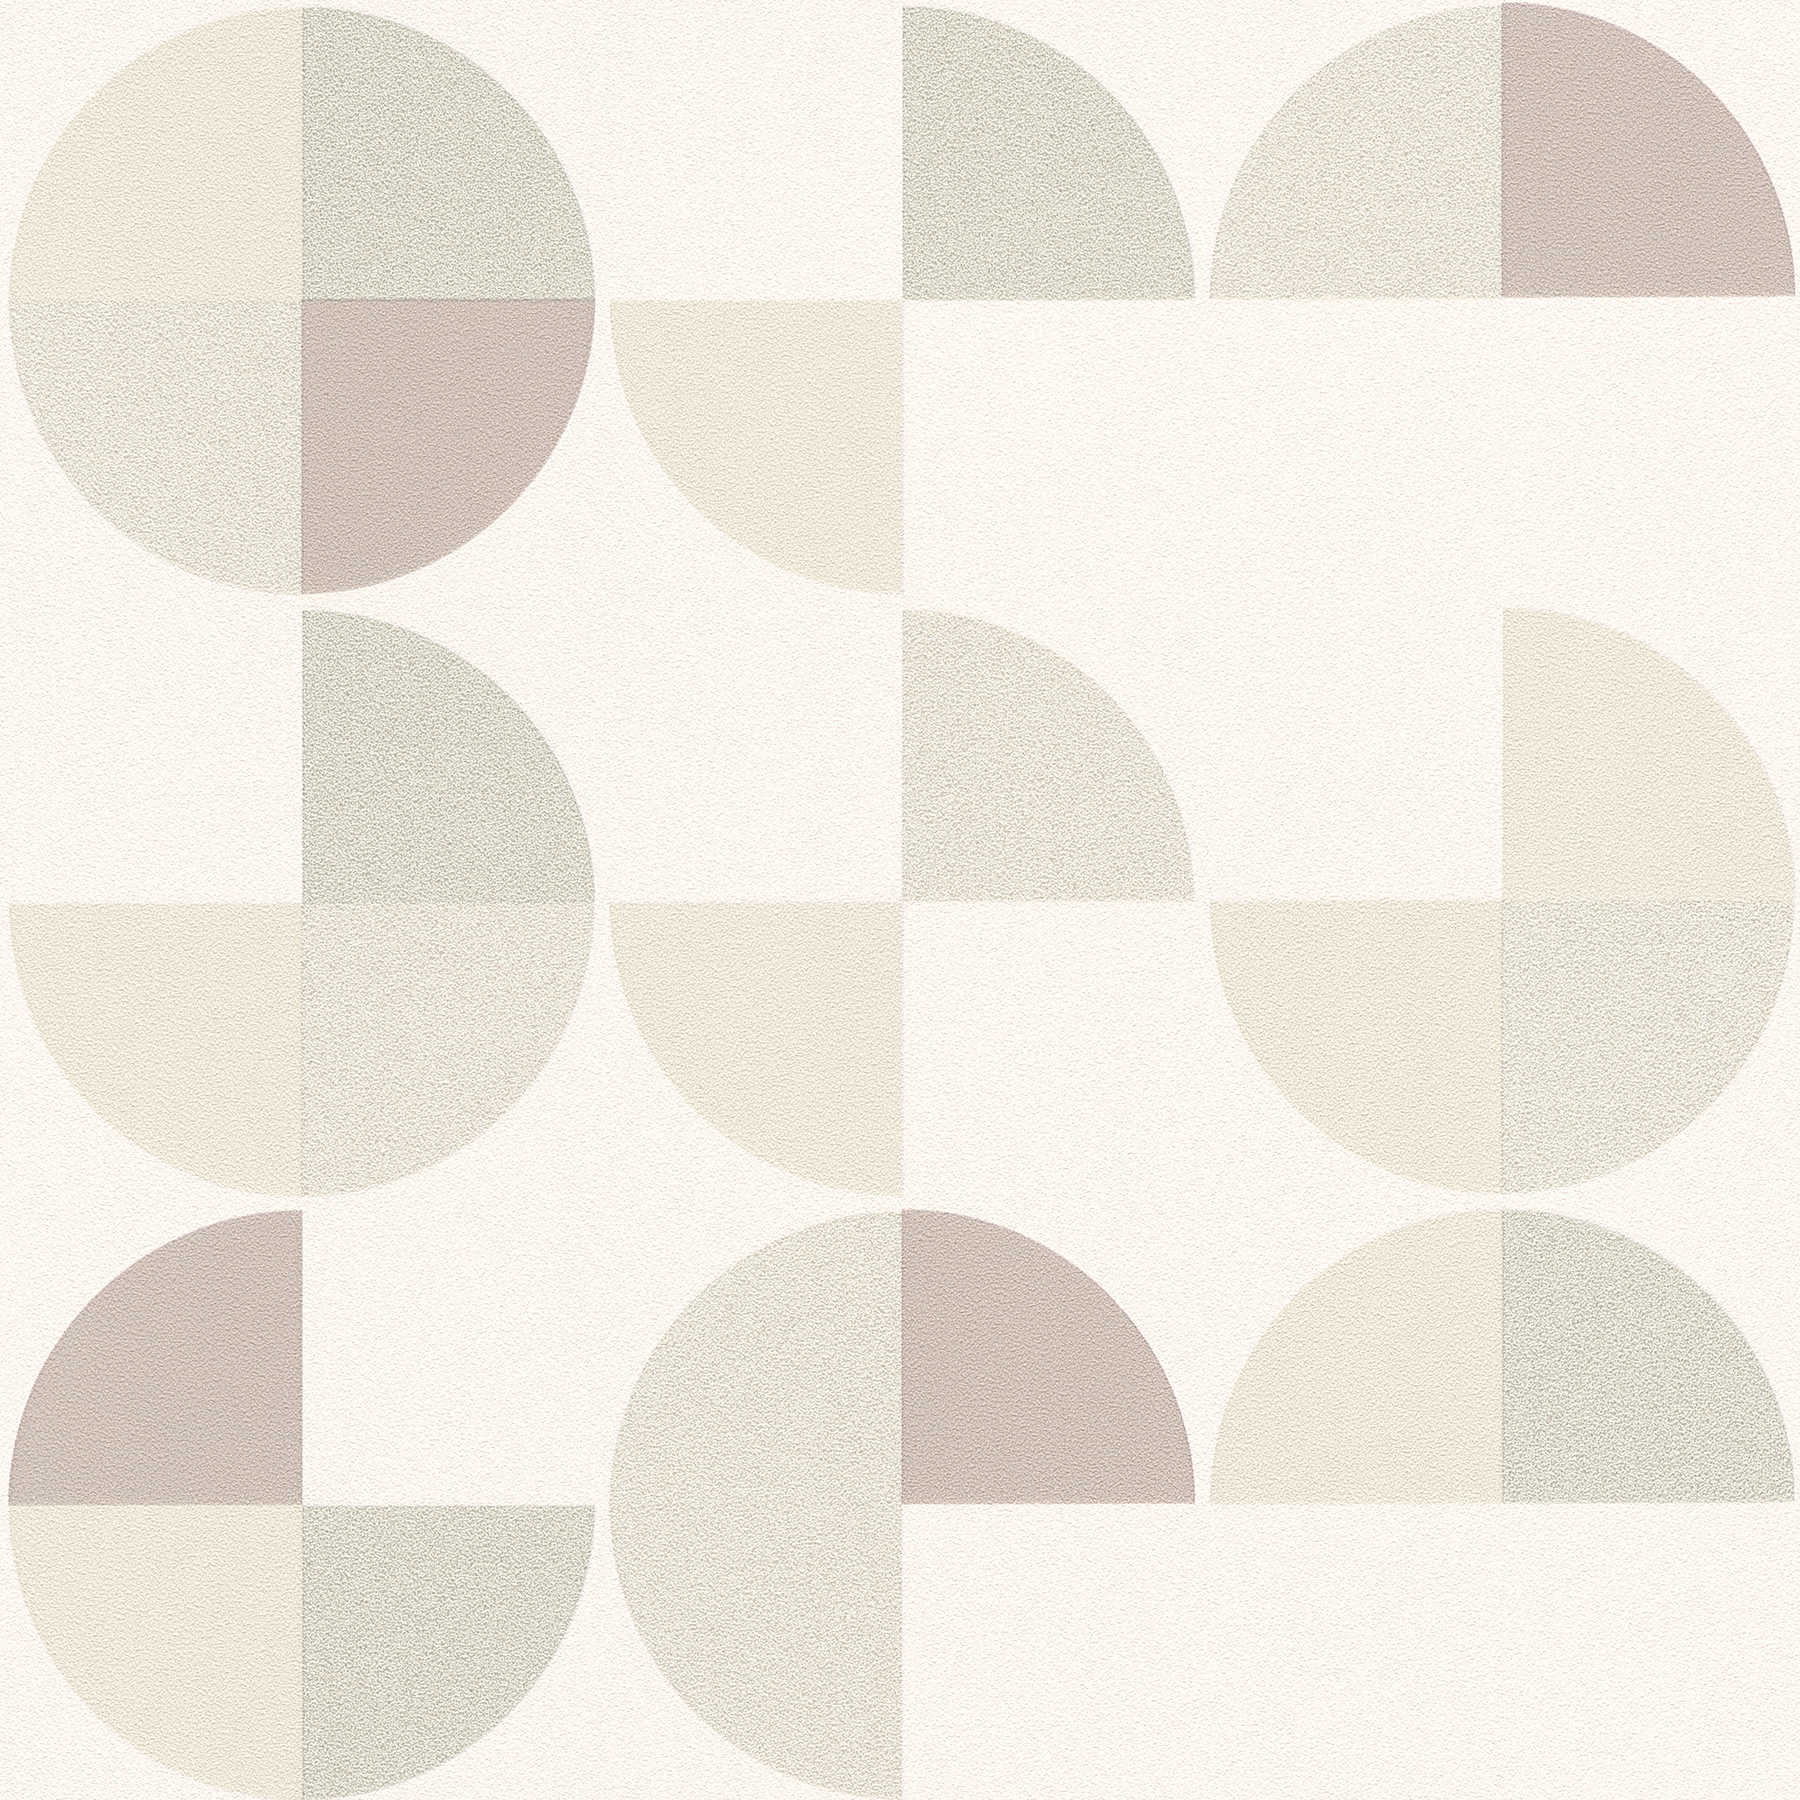 Scandinavian style geometric pattern wallpaper - grey, beige, white
